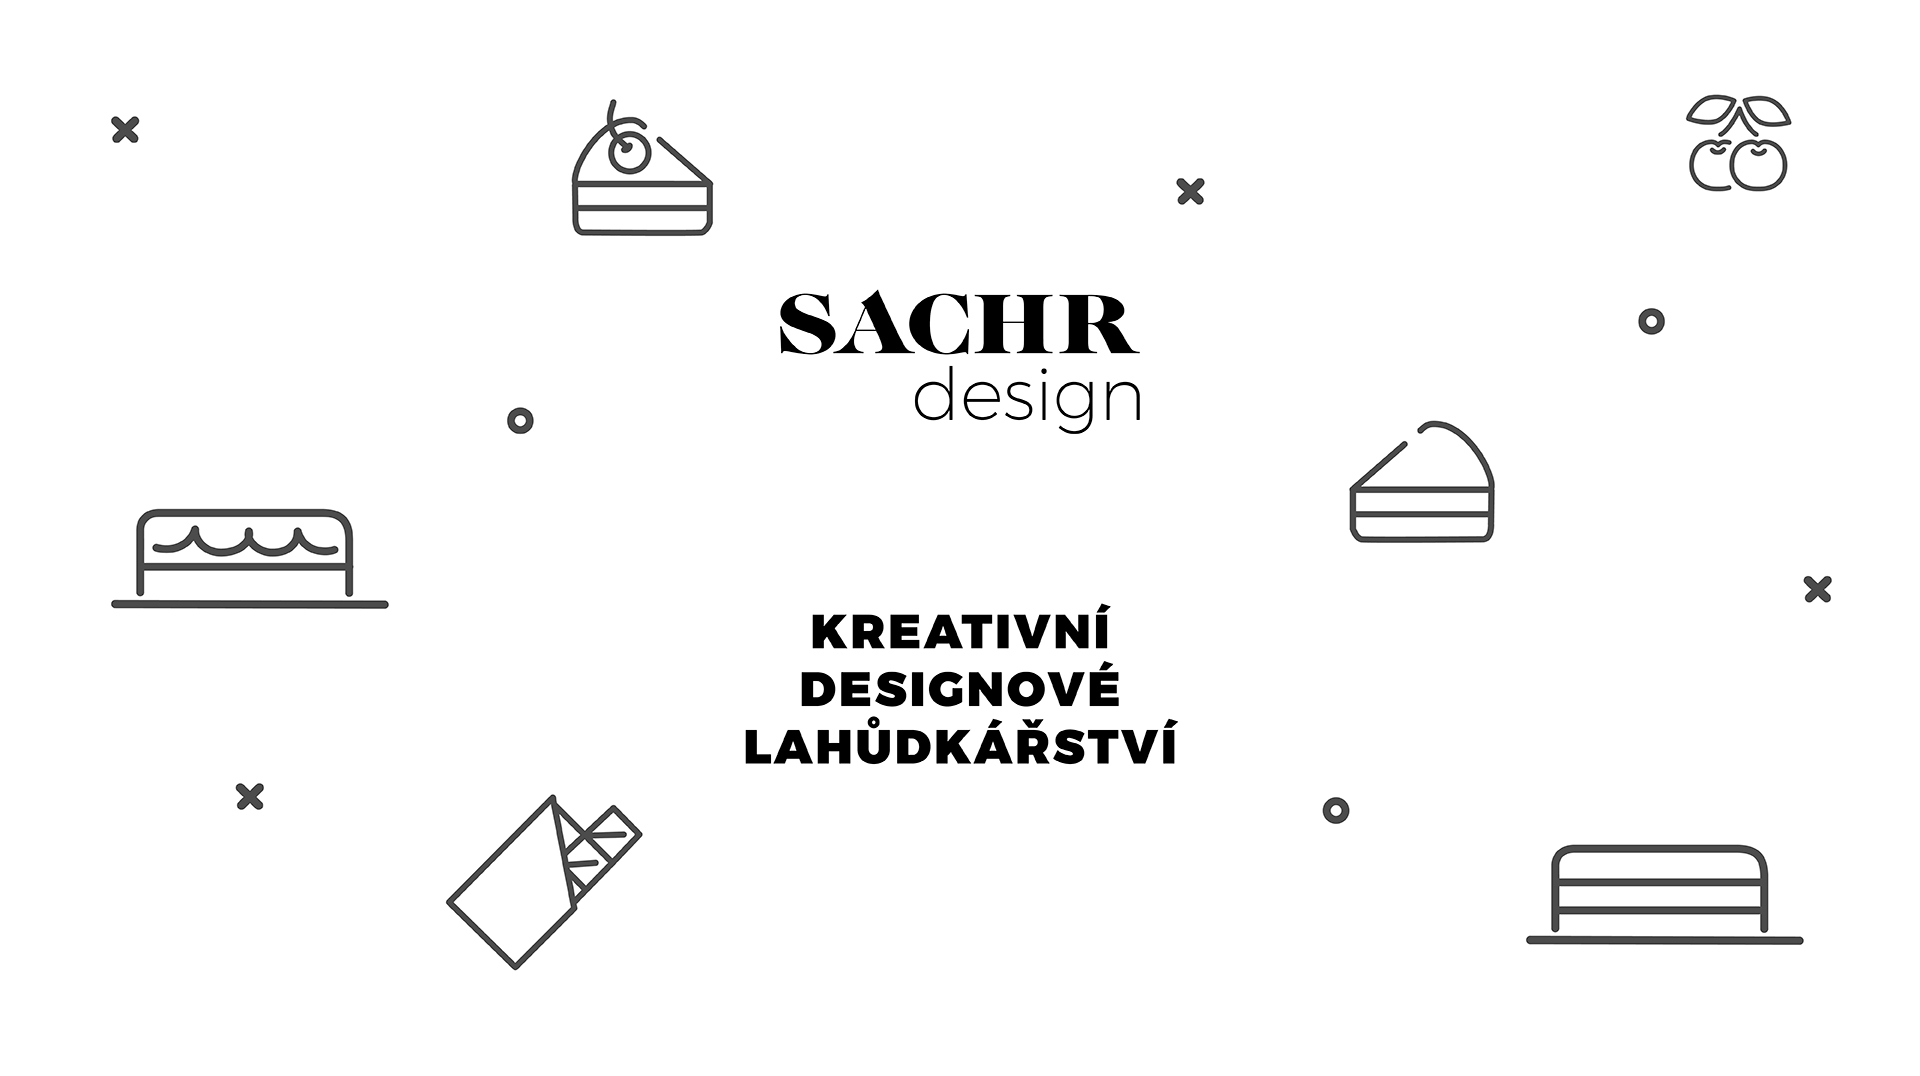 SACHR design